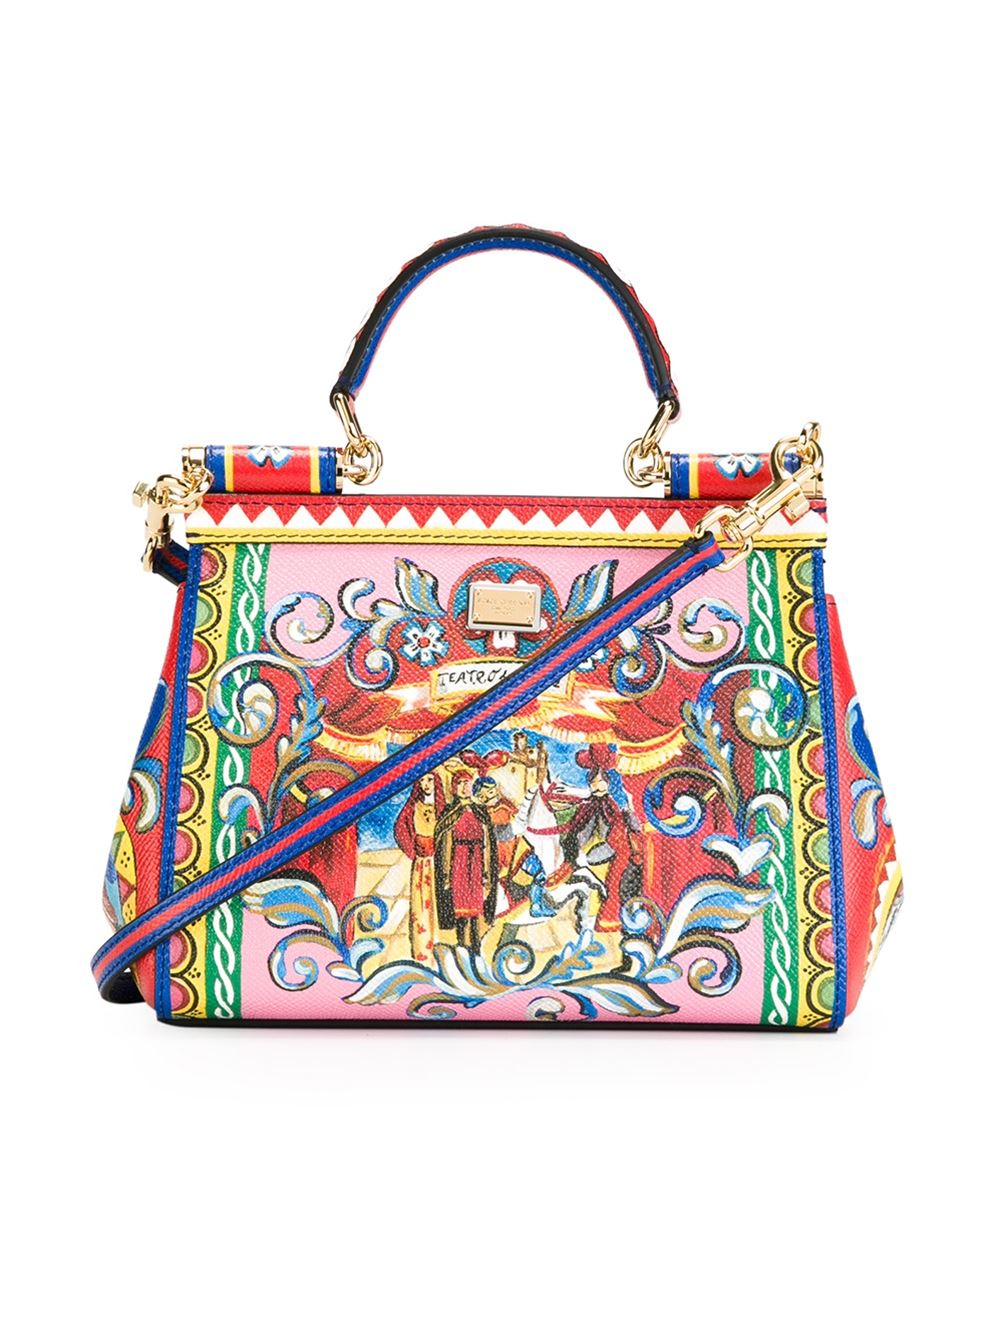 Dolce & Gabbana Carretti Print Miss Sicily Small Handbag - Lyst